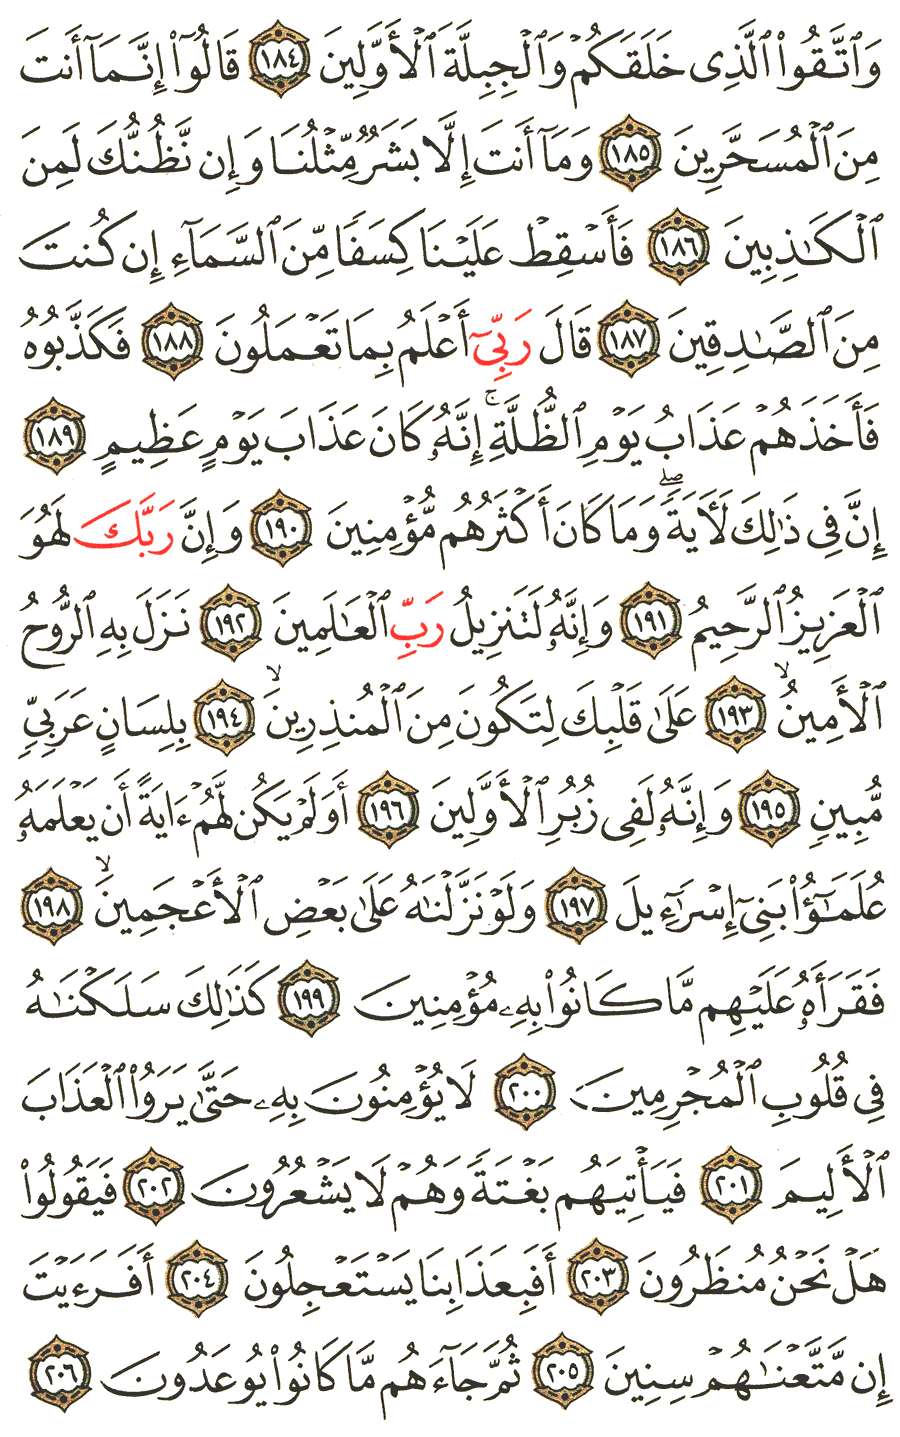 الصفحة رقم 375  من القرآن الكريم مكتوبة من المصحف